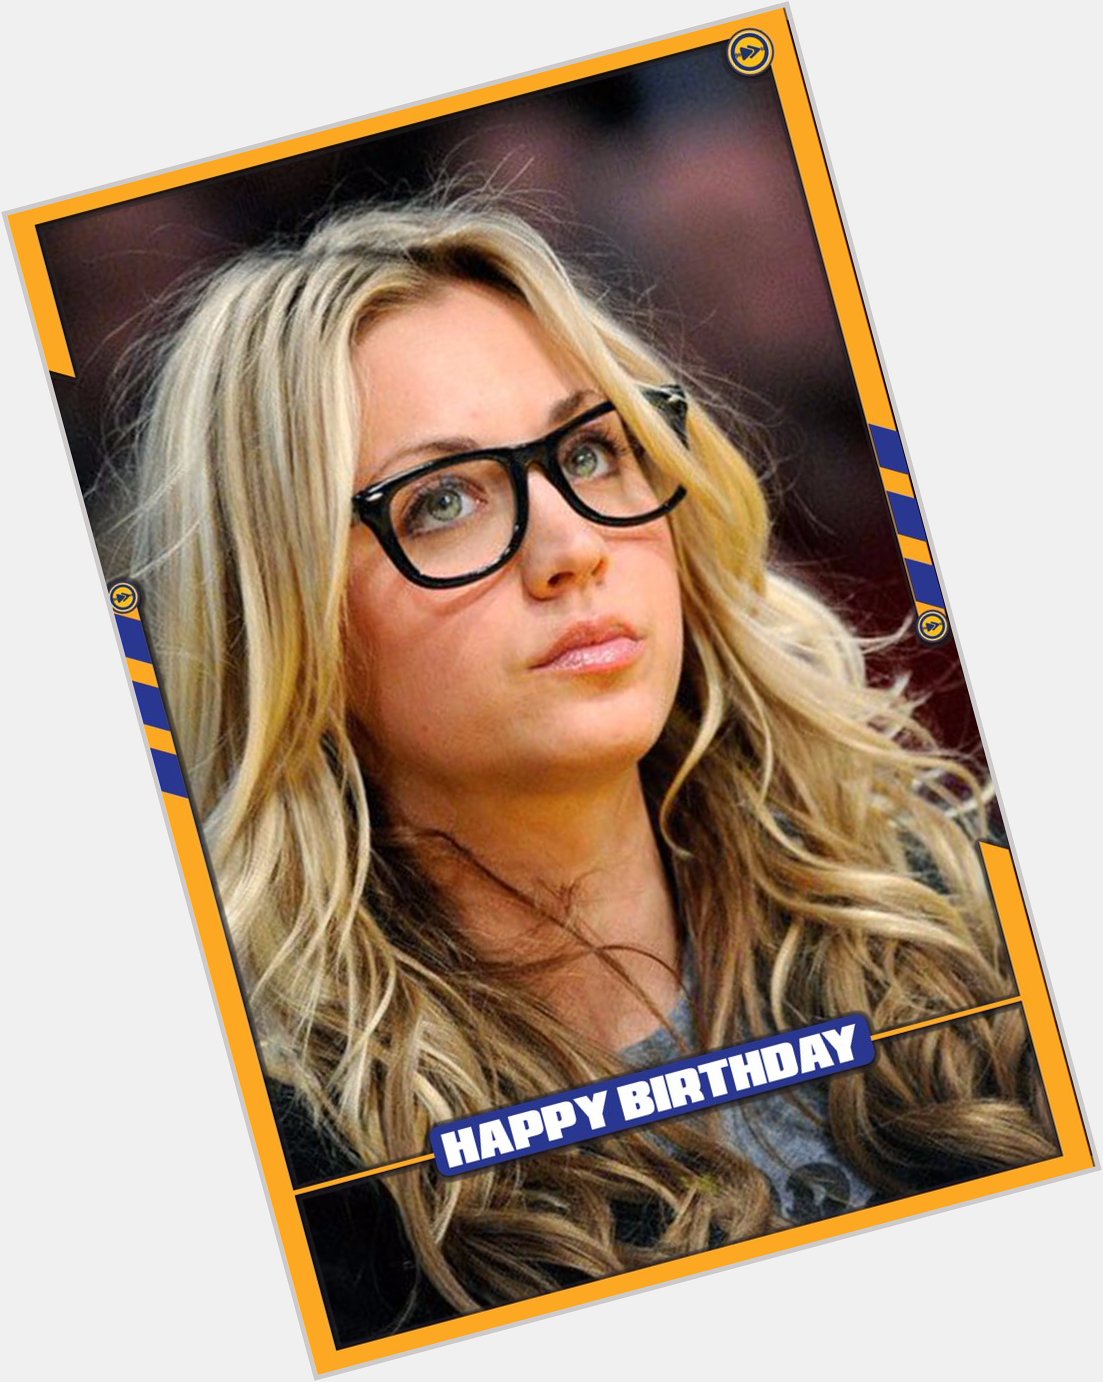 Happy birthday to The Big Bang Theory actress, Kaley Cuoco!!! 